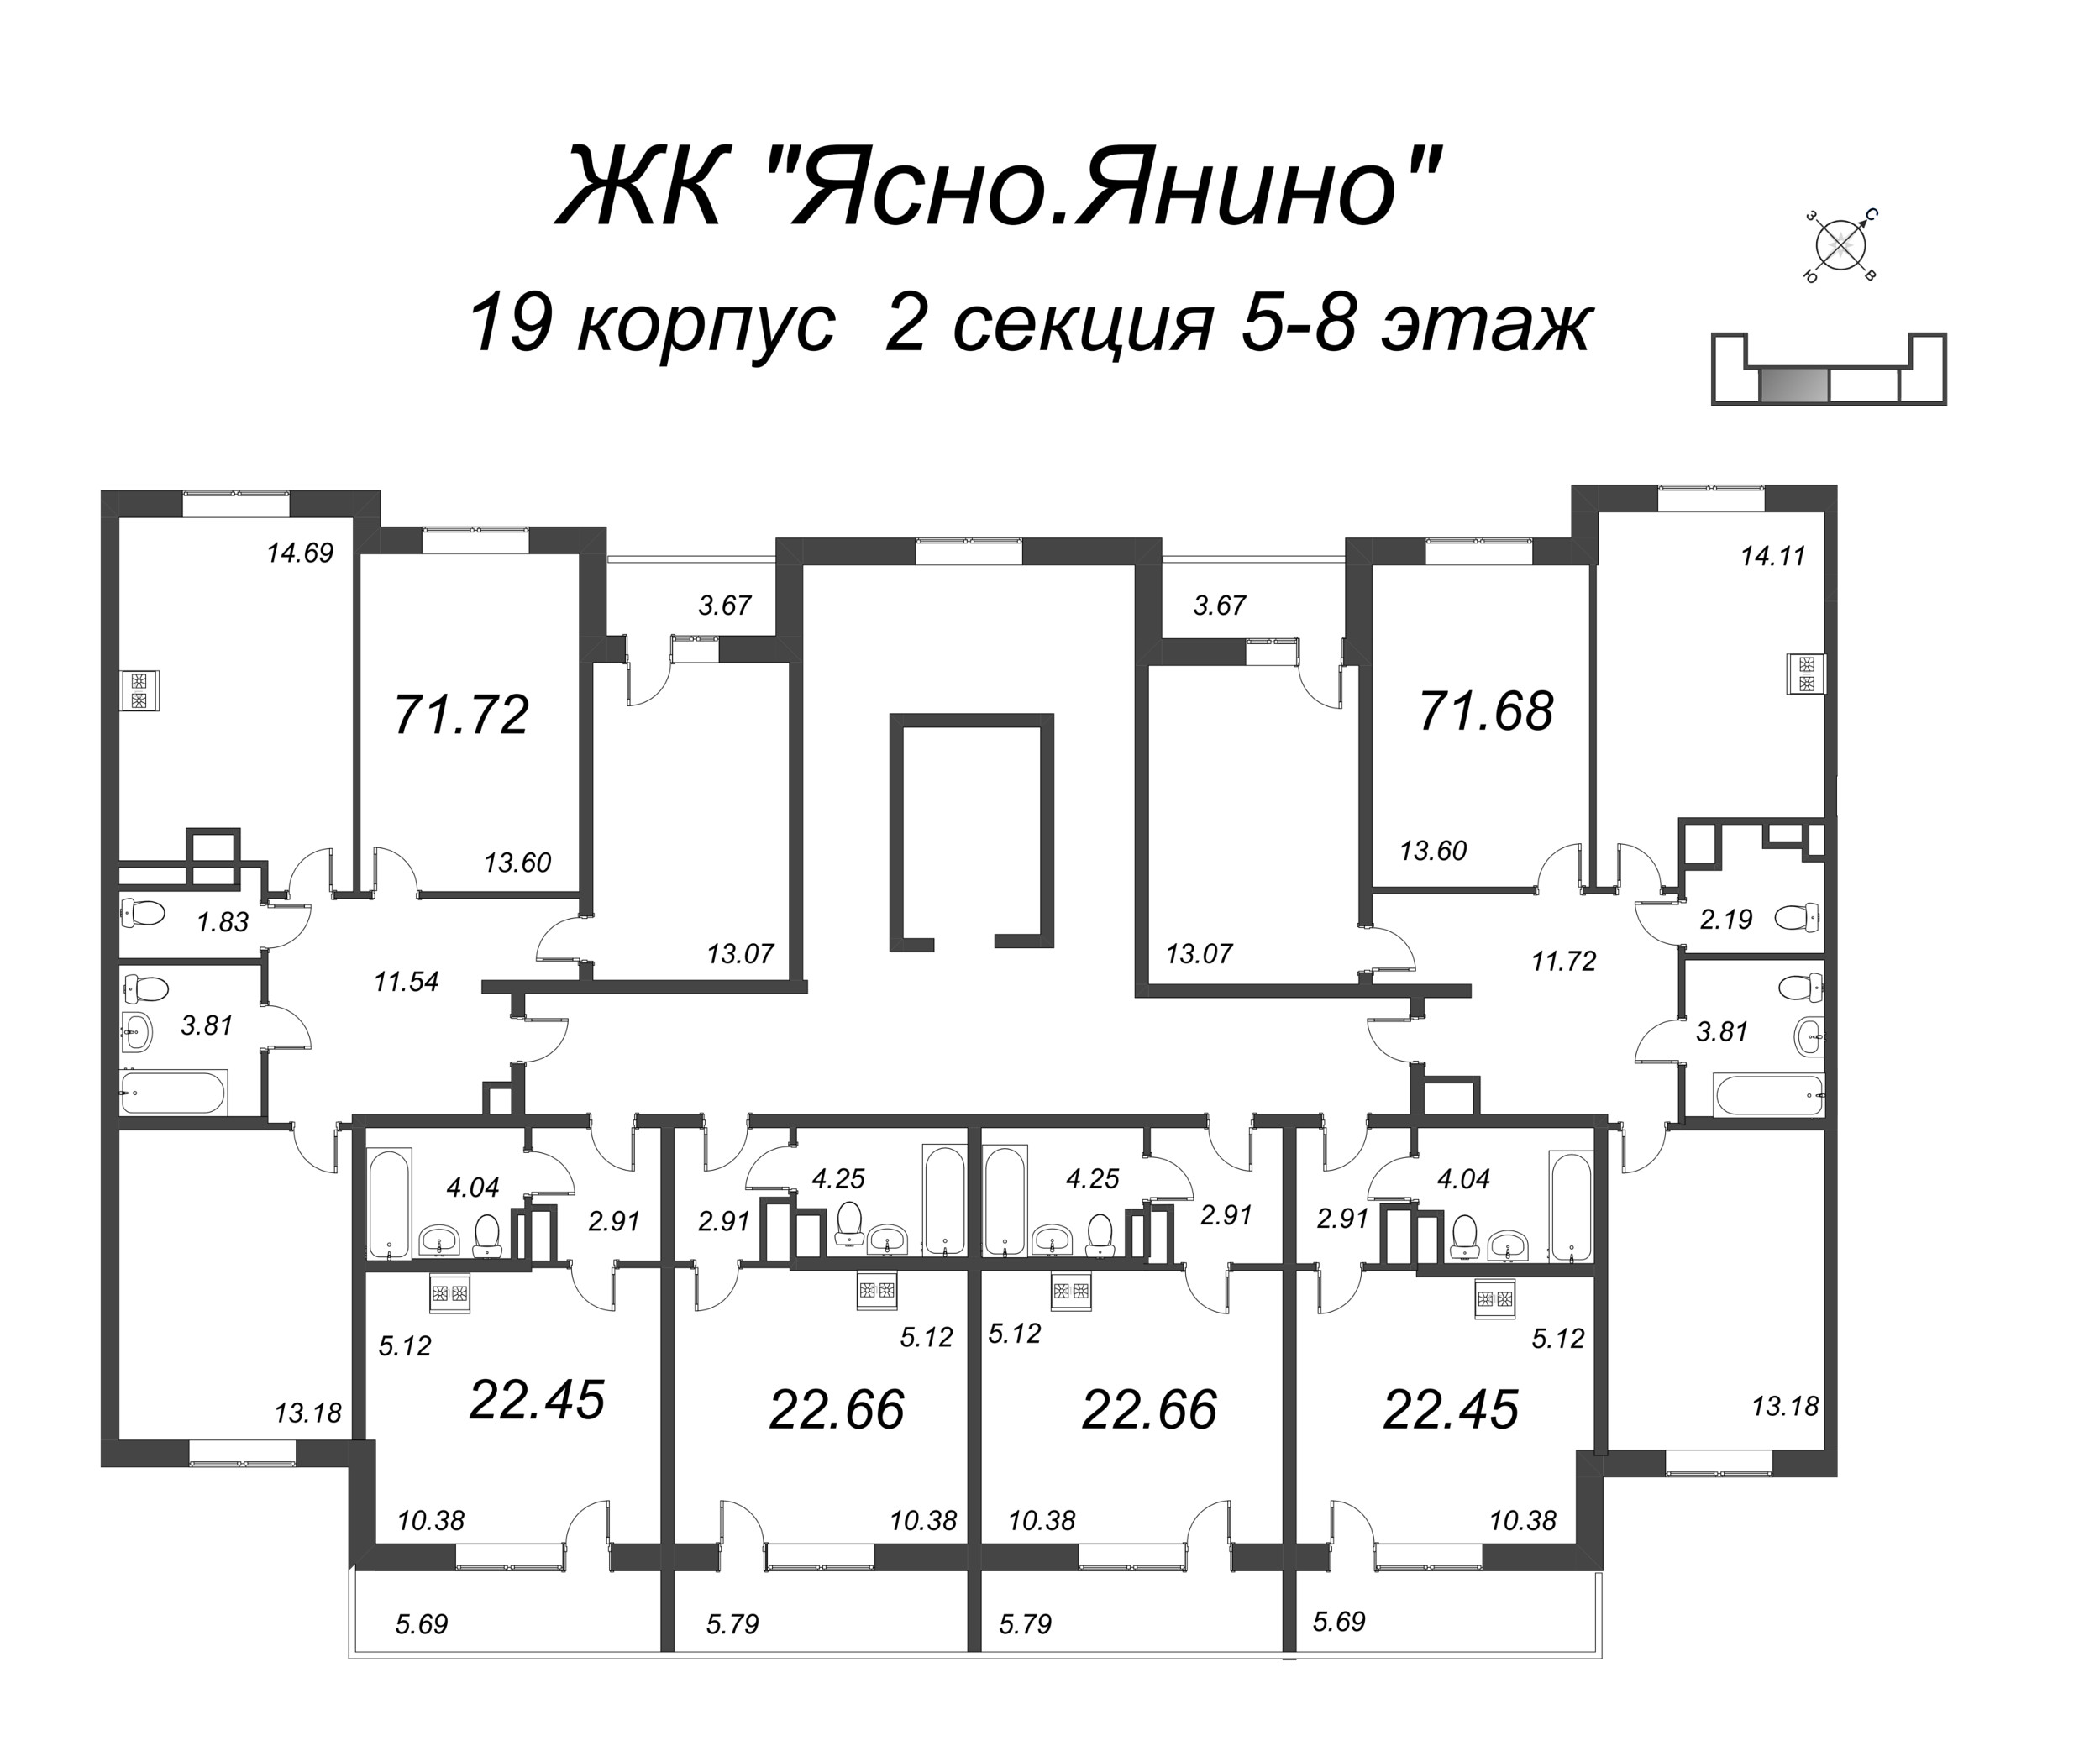 Квартира-студия, 22.66 м² в ЖК "Ясно.Янино" - планировка этажа